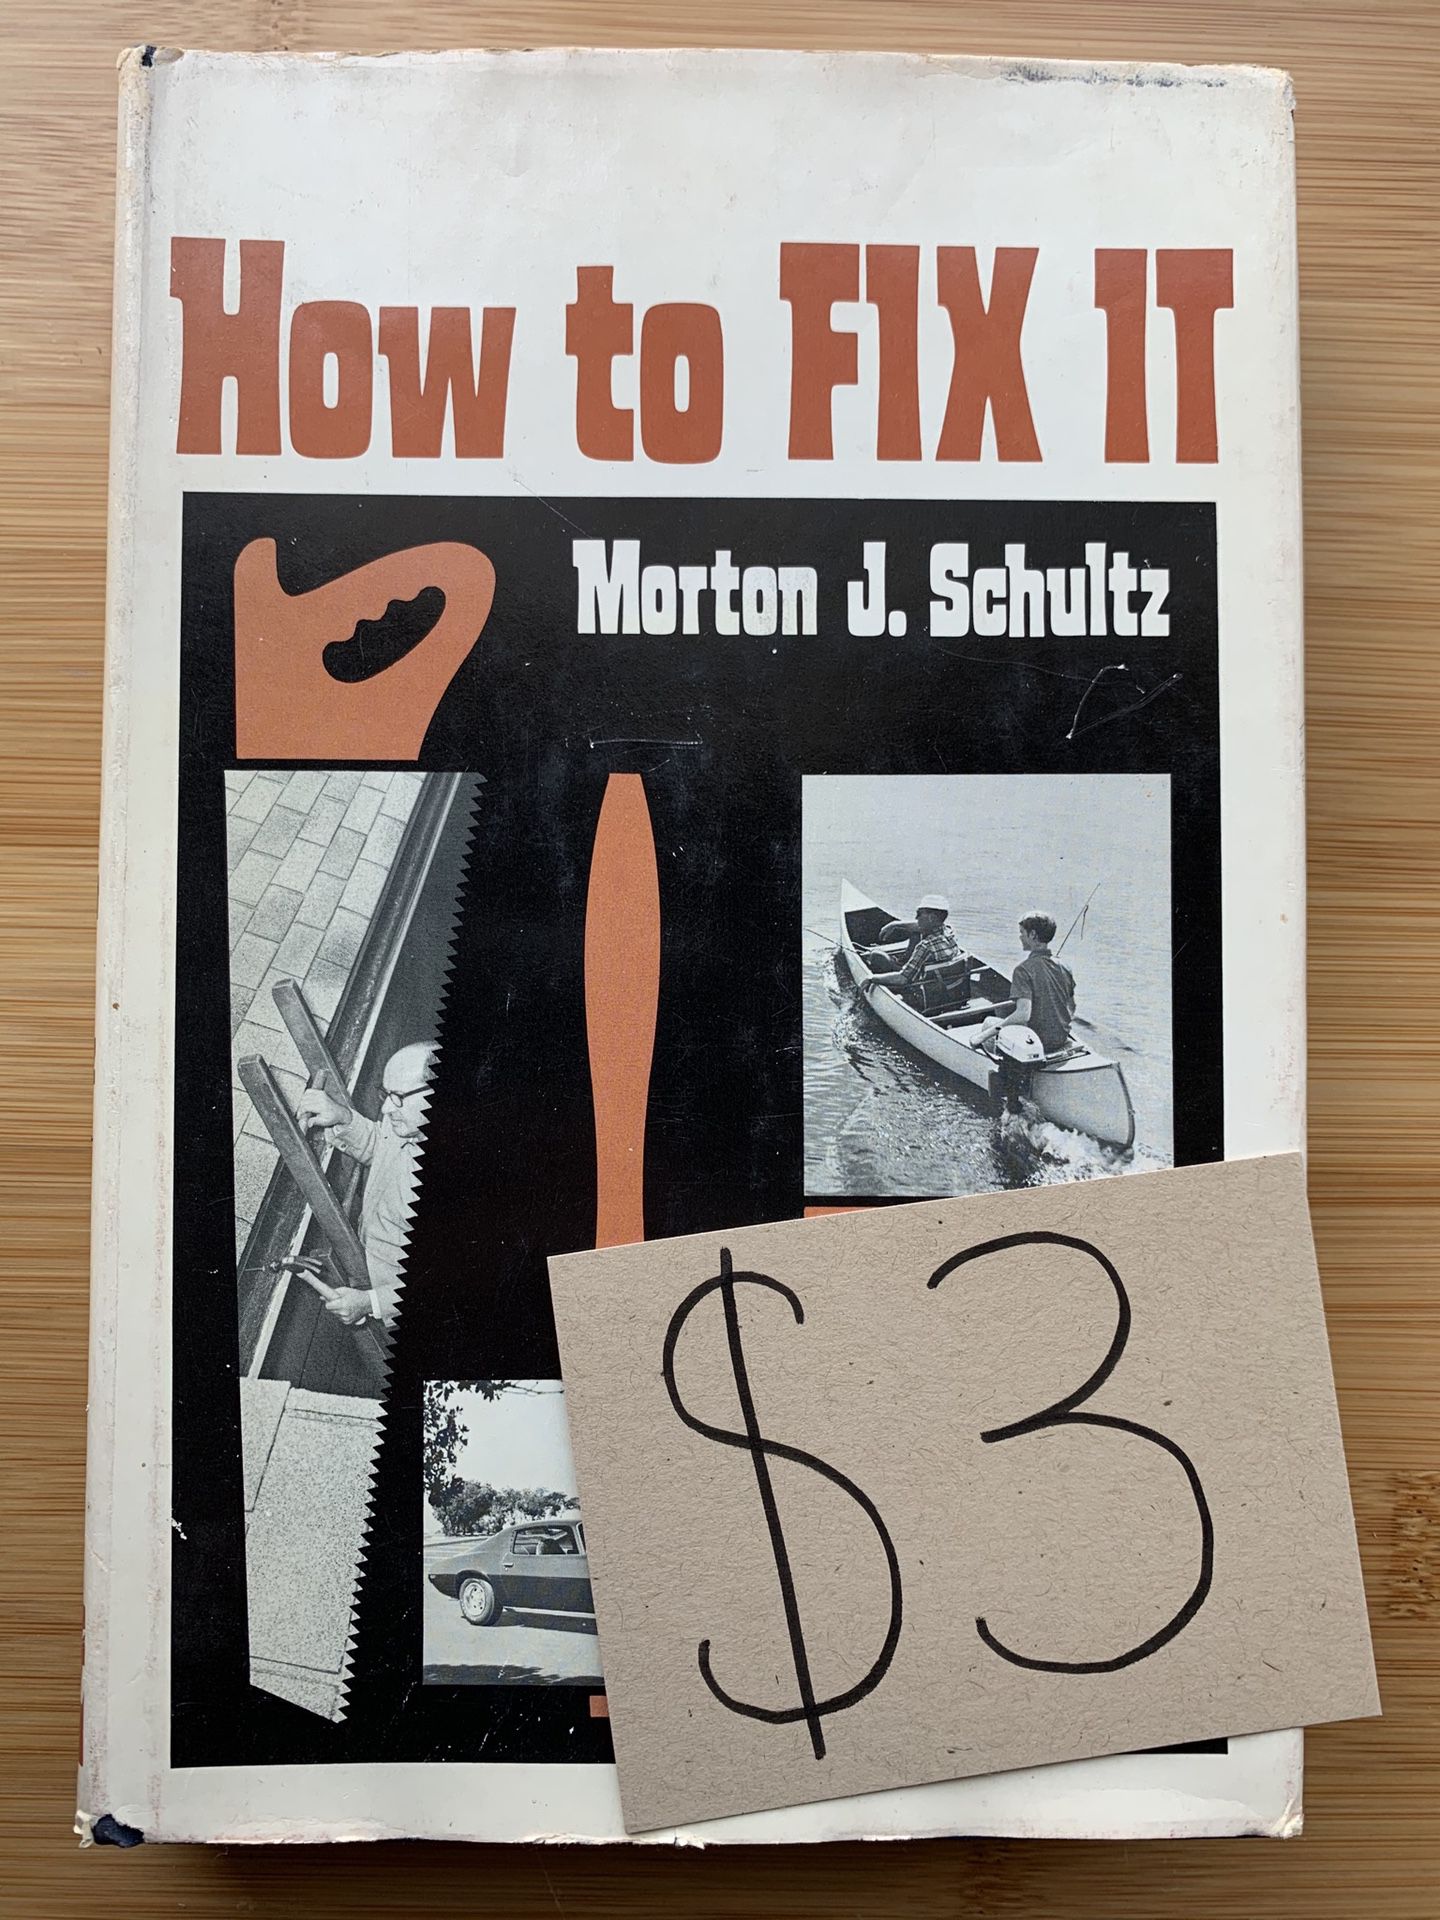 How to Fix It by Morton J Schultz (vintage book)